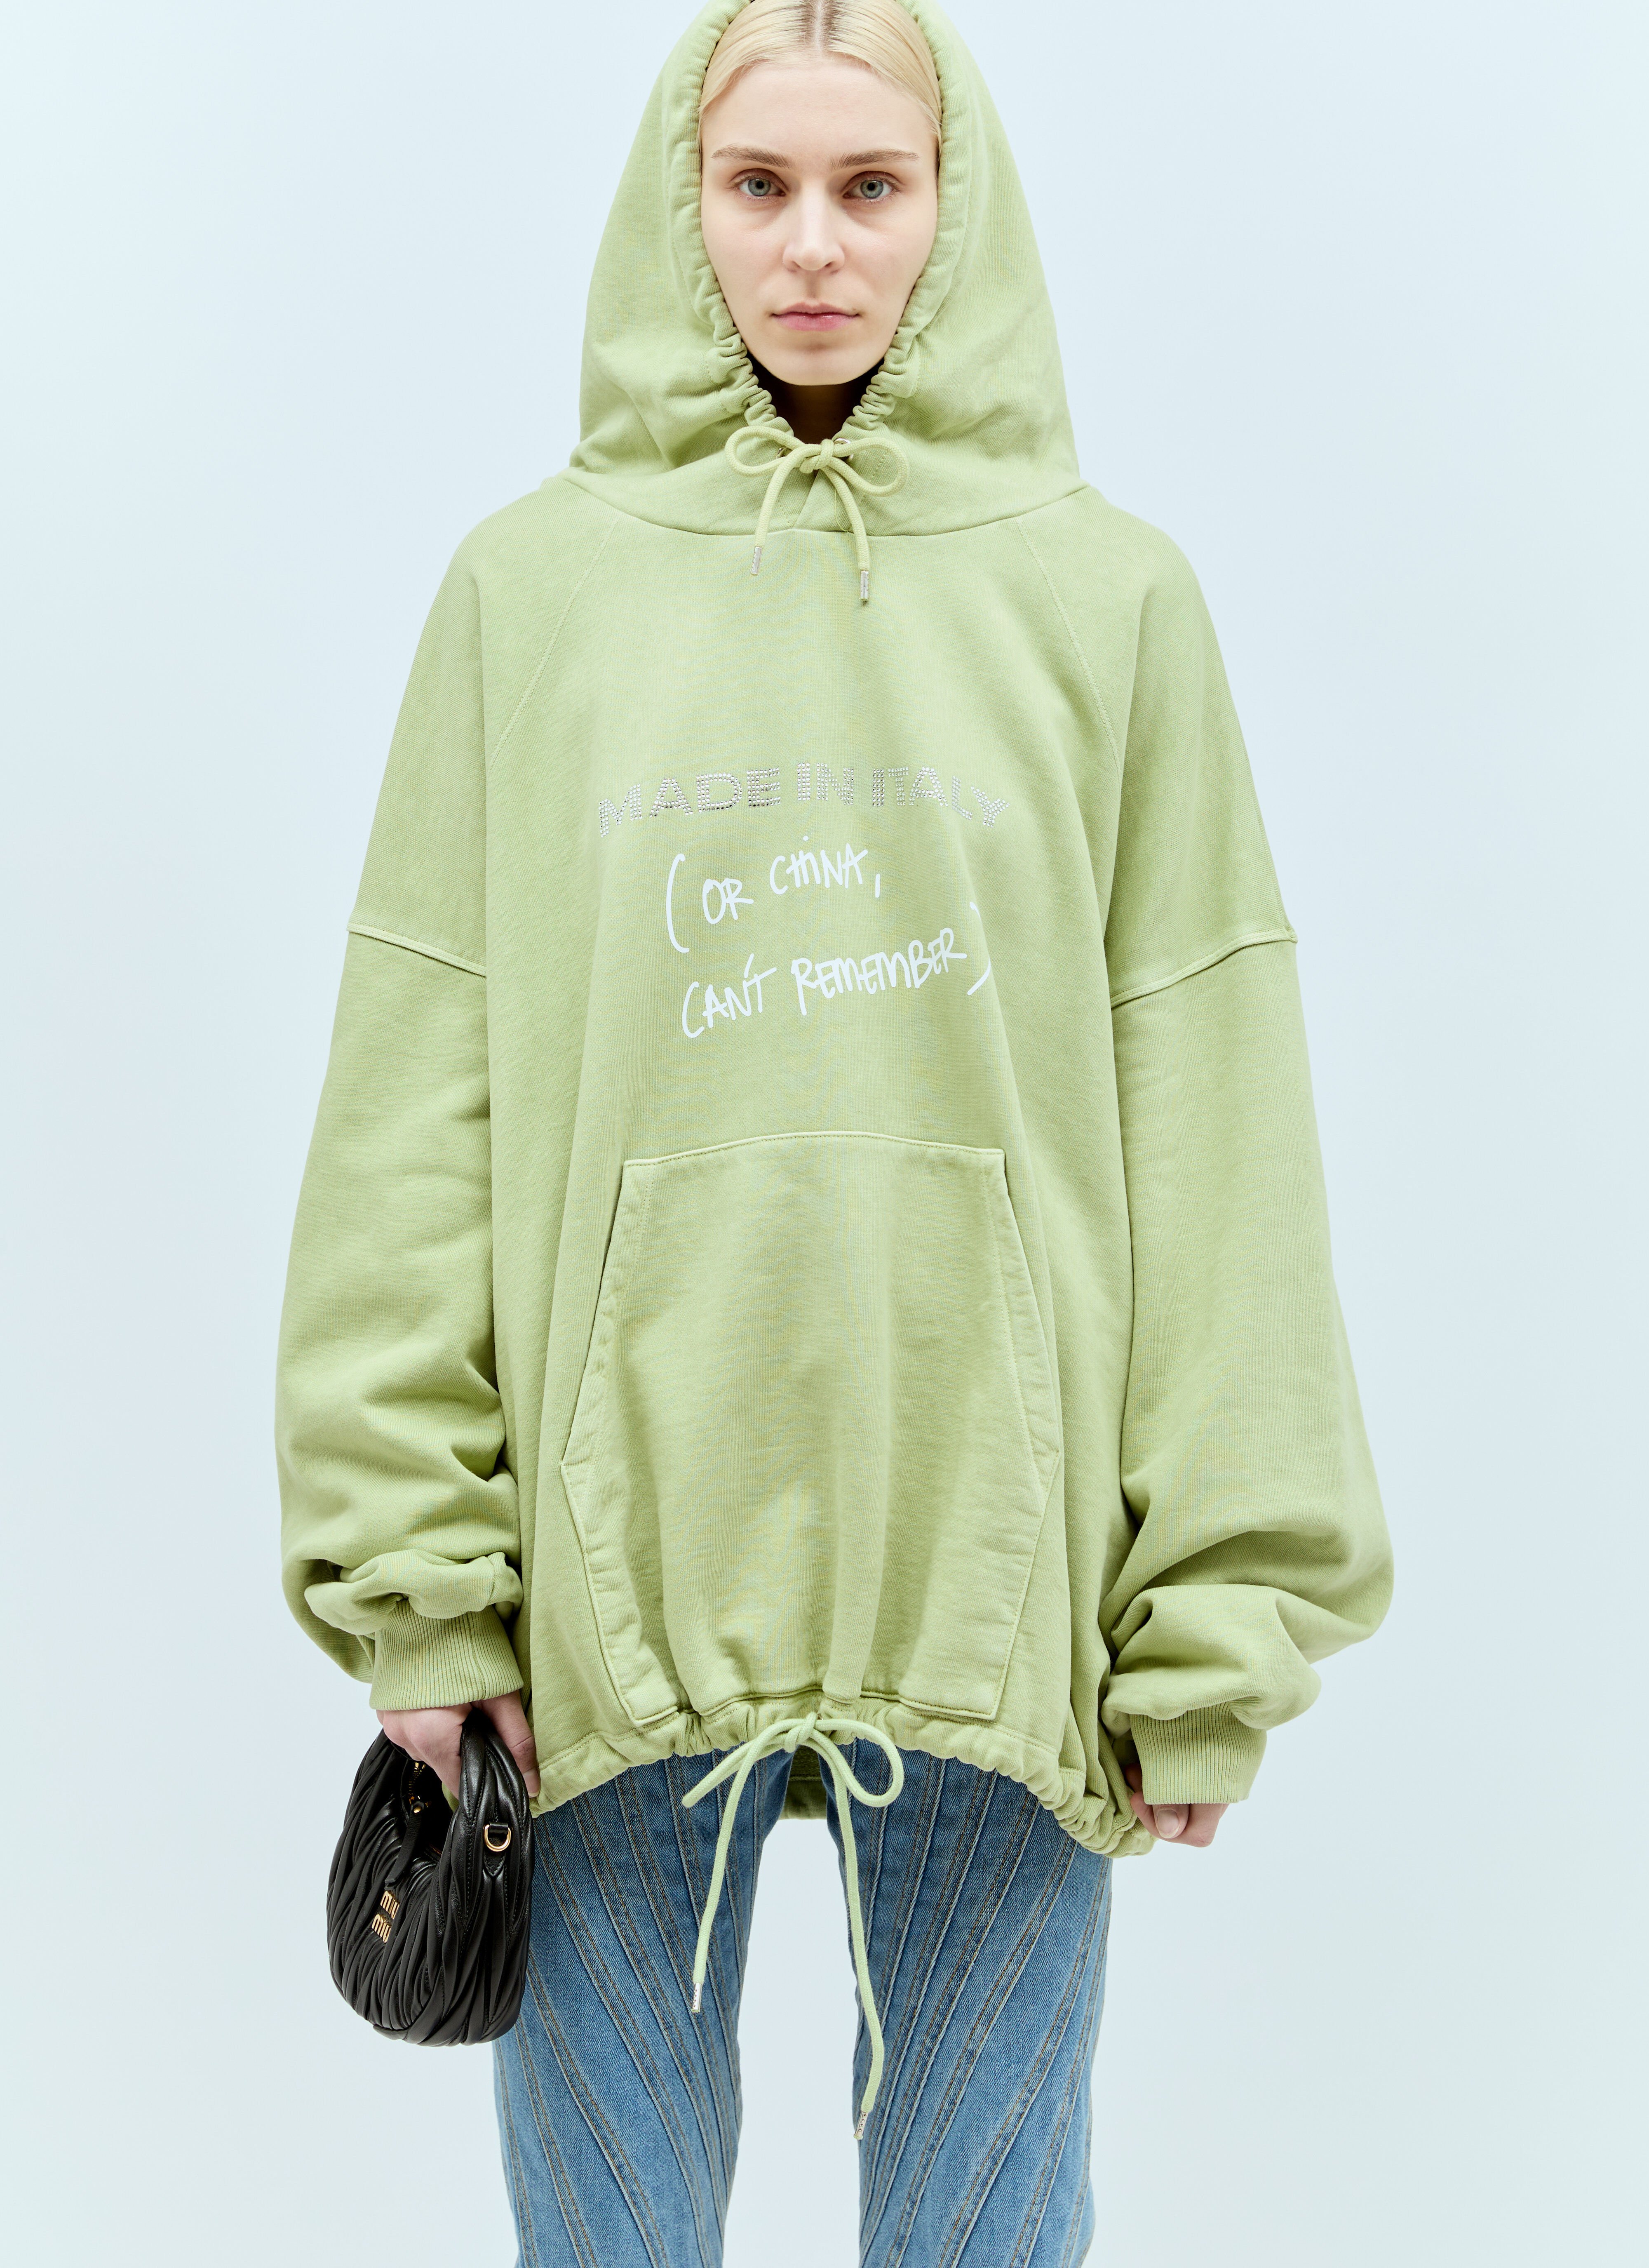 Jil Sander+ クリスタル飾りフード付きスウェットシャツ クリーム jsp0251010